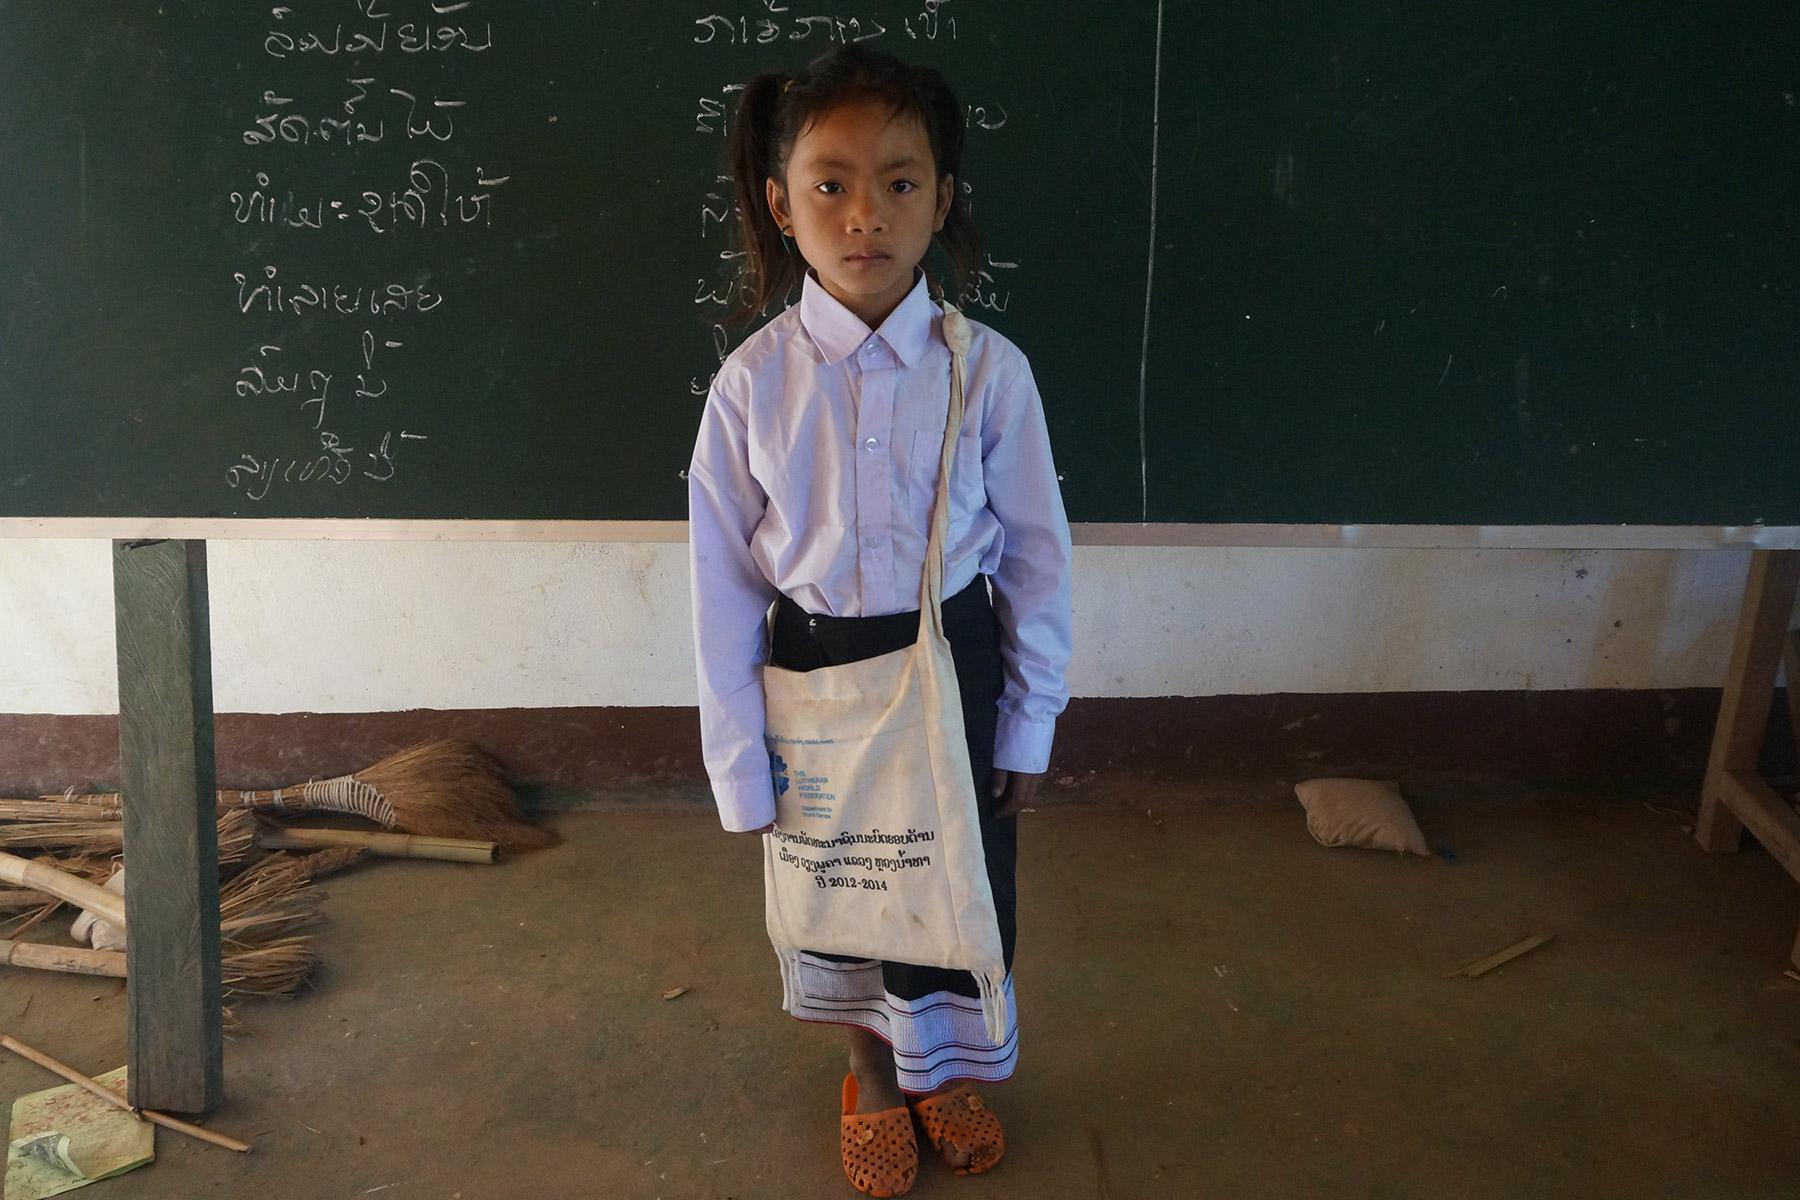 Chanset, ein der ethnischen Gruppe der Khmu angehörendes Mädchen in nördlichen Laos, mit Schuluniform, Büchern und anderen Utensilien, die vom LWB im Rahmen eines Programms zur Verfügung gestellt werden, um Mädchen den Zugang zu guter Bildung zu ermöglichen. Foto: LWB/A. Simayvanh